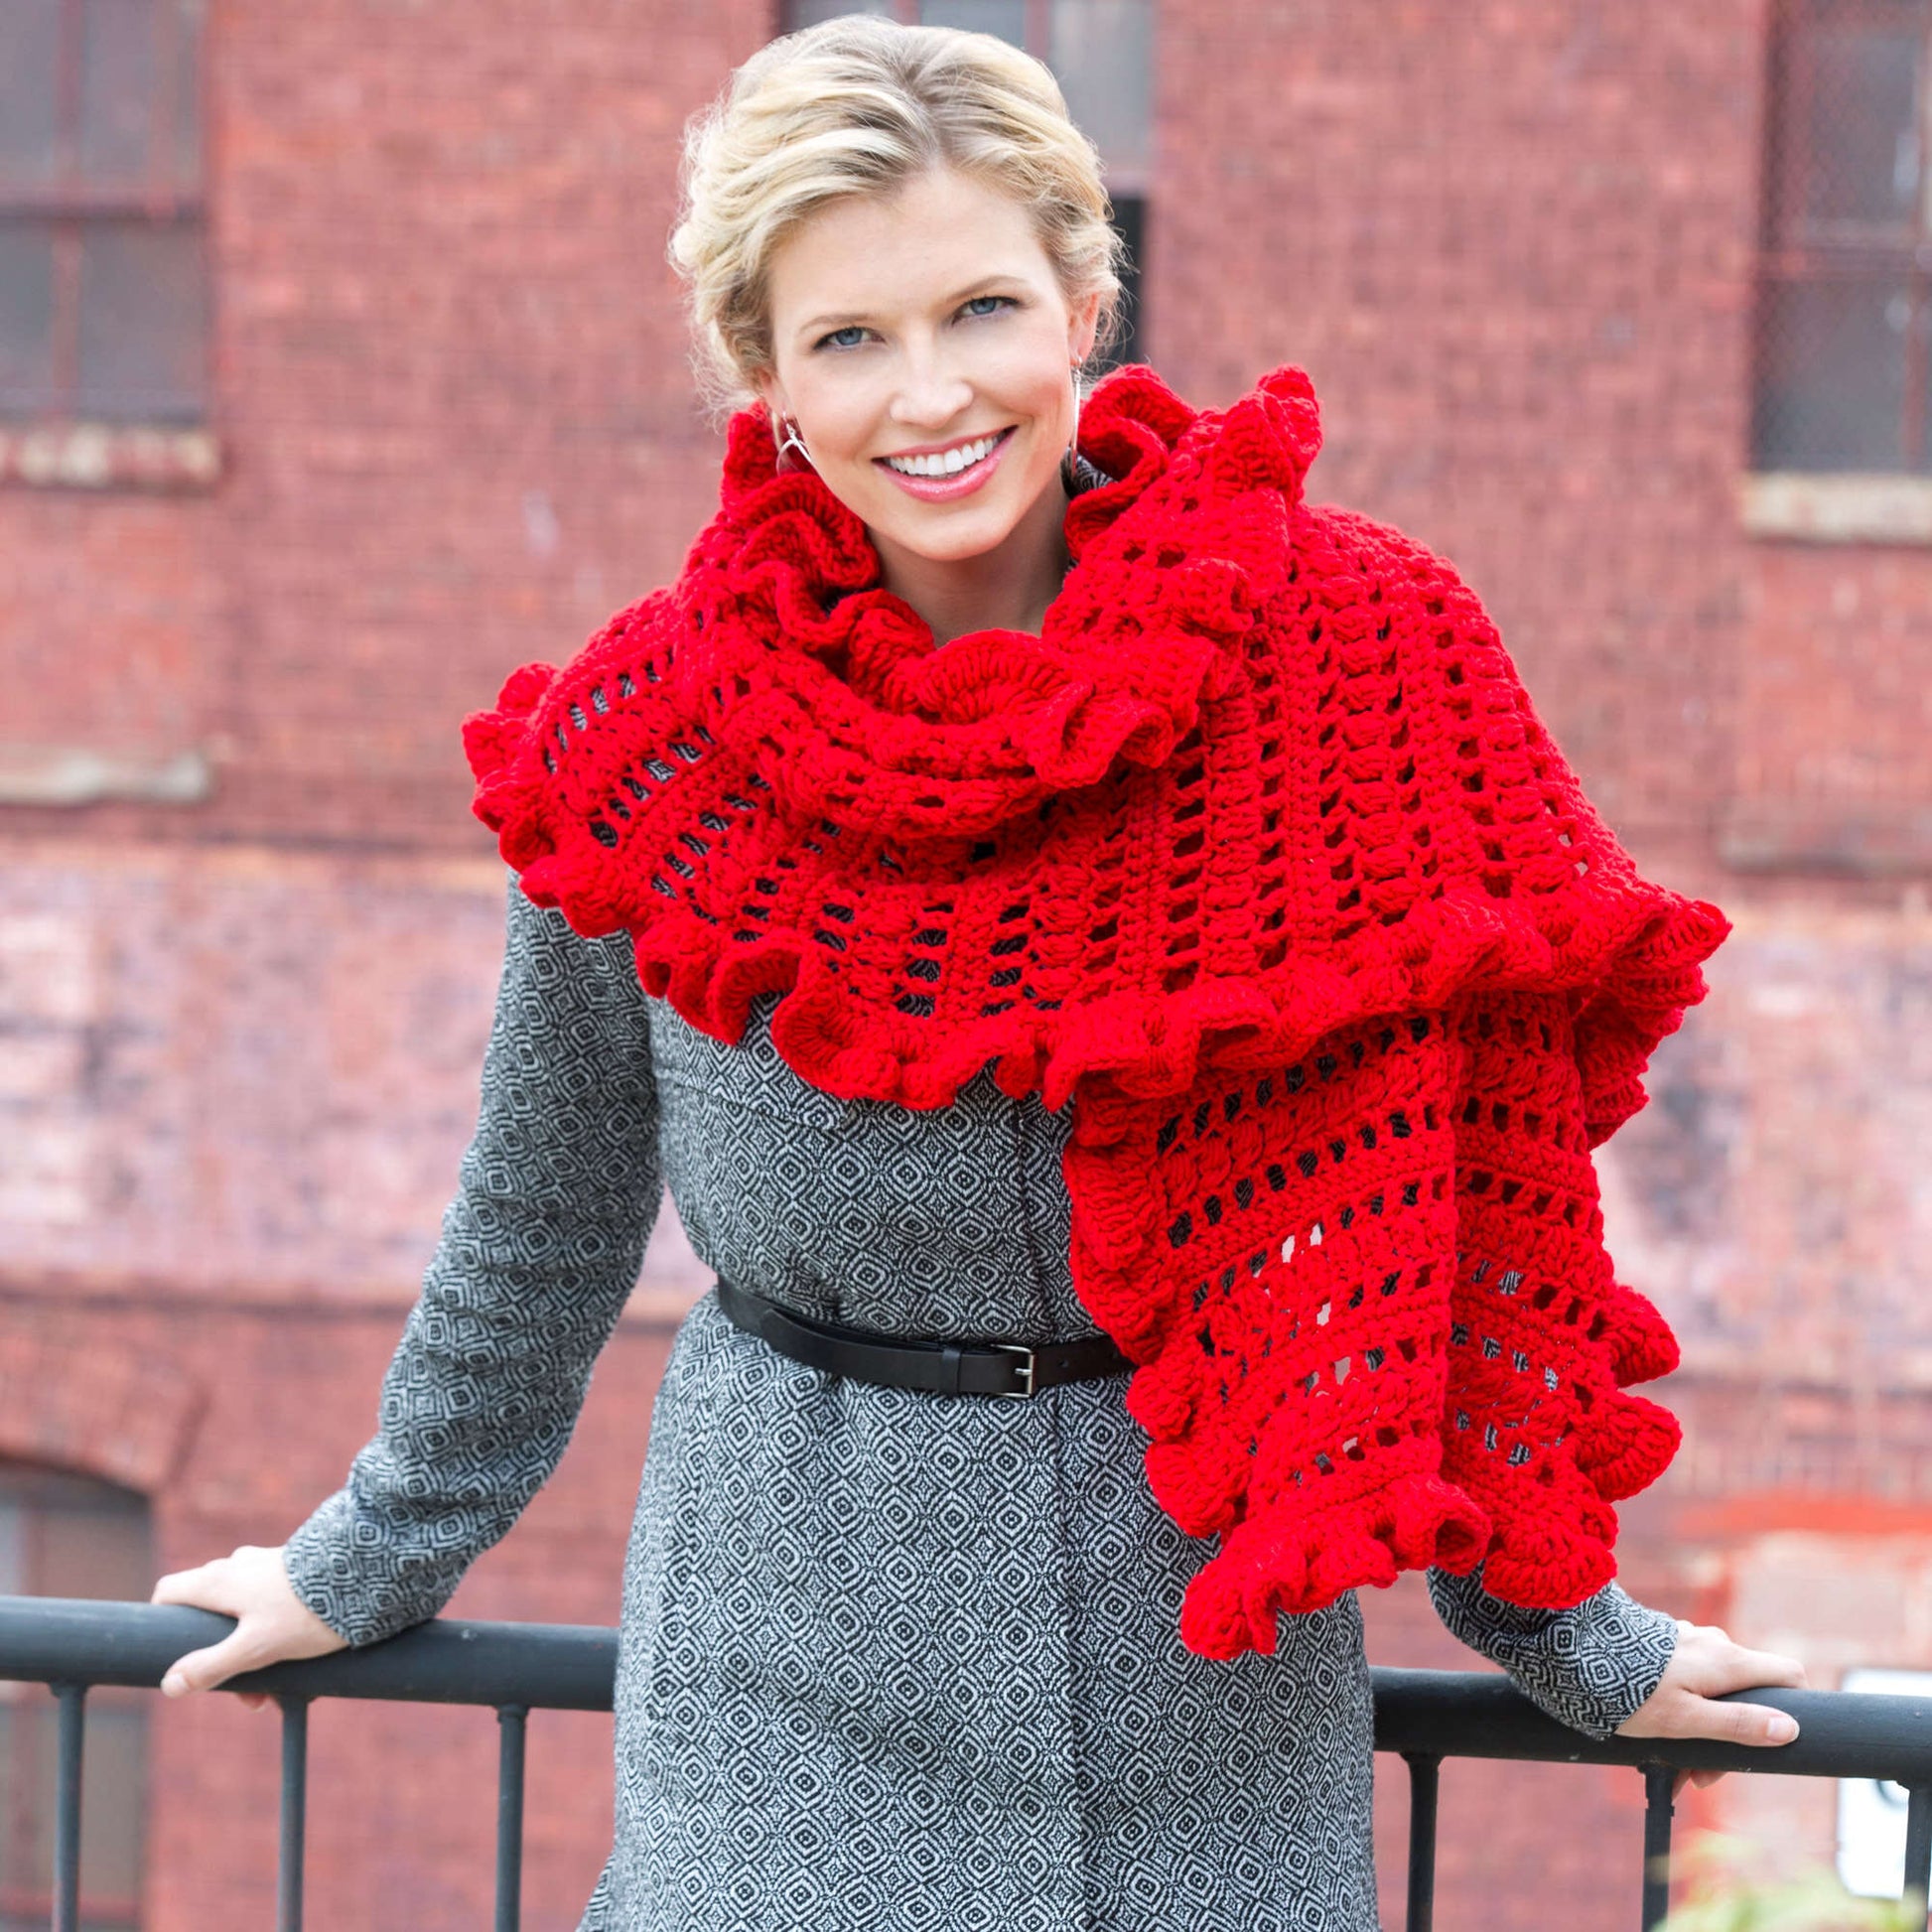 Free Red Heart Crochet Ruffled Wrap Pattern